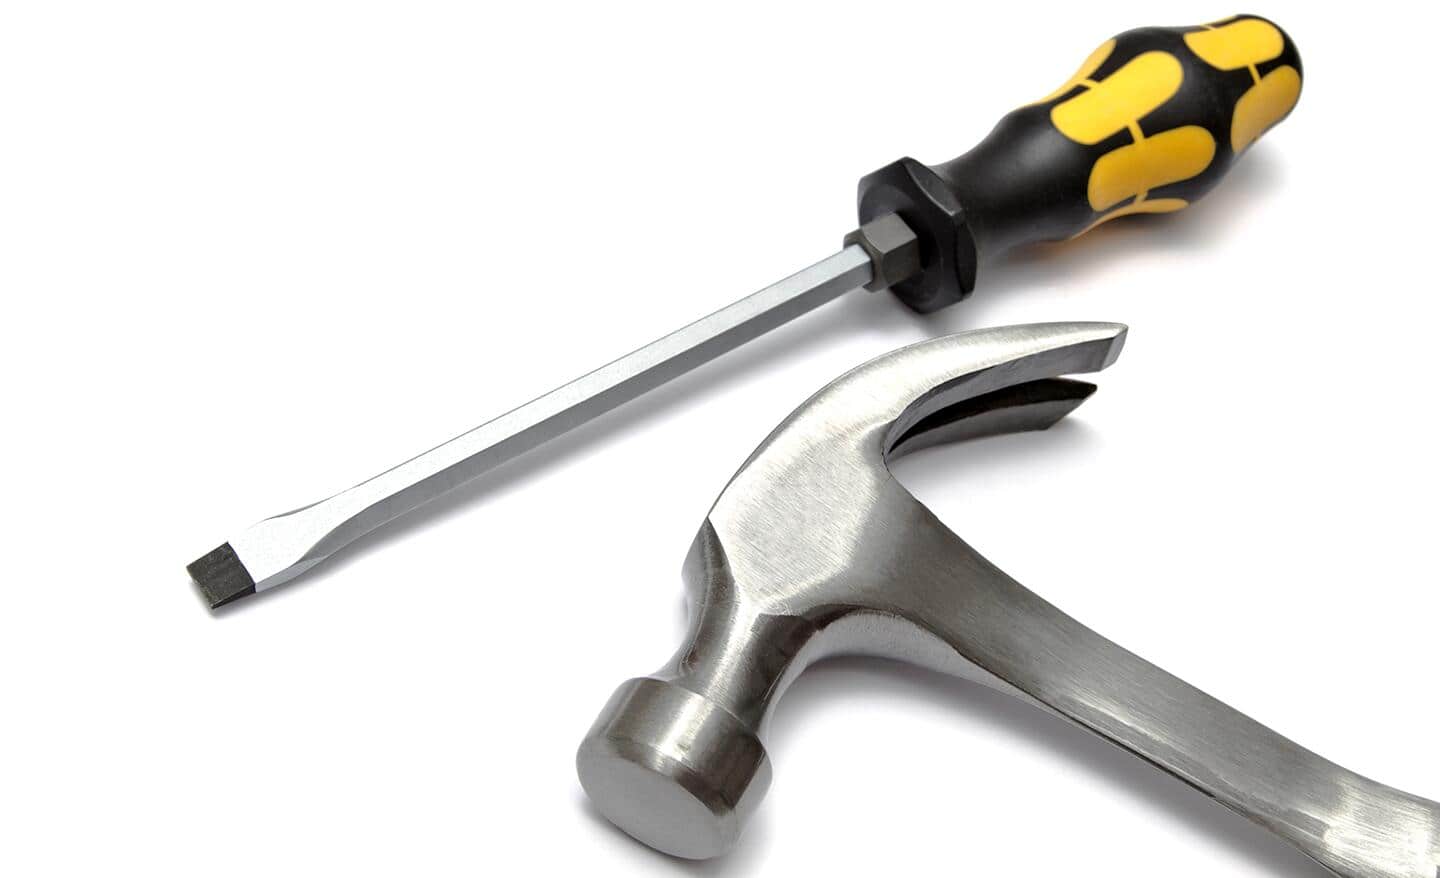 A hammer lying beside a screwdriver.